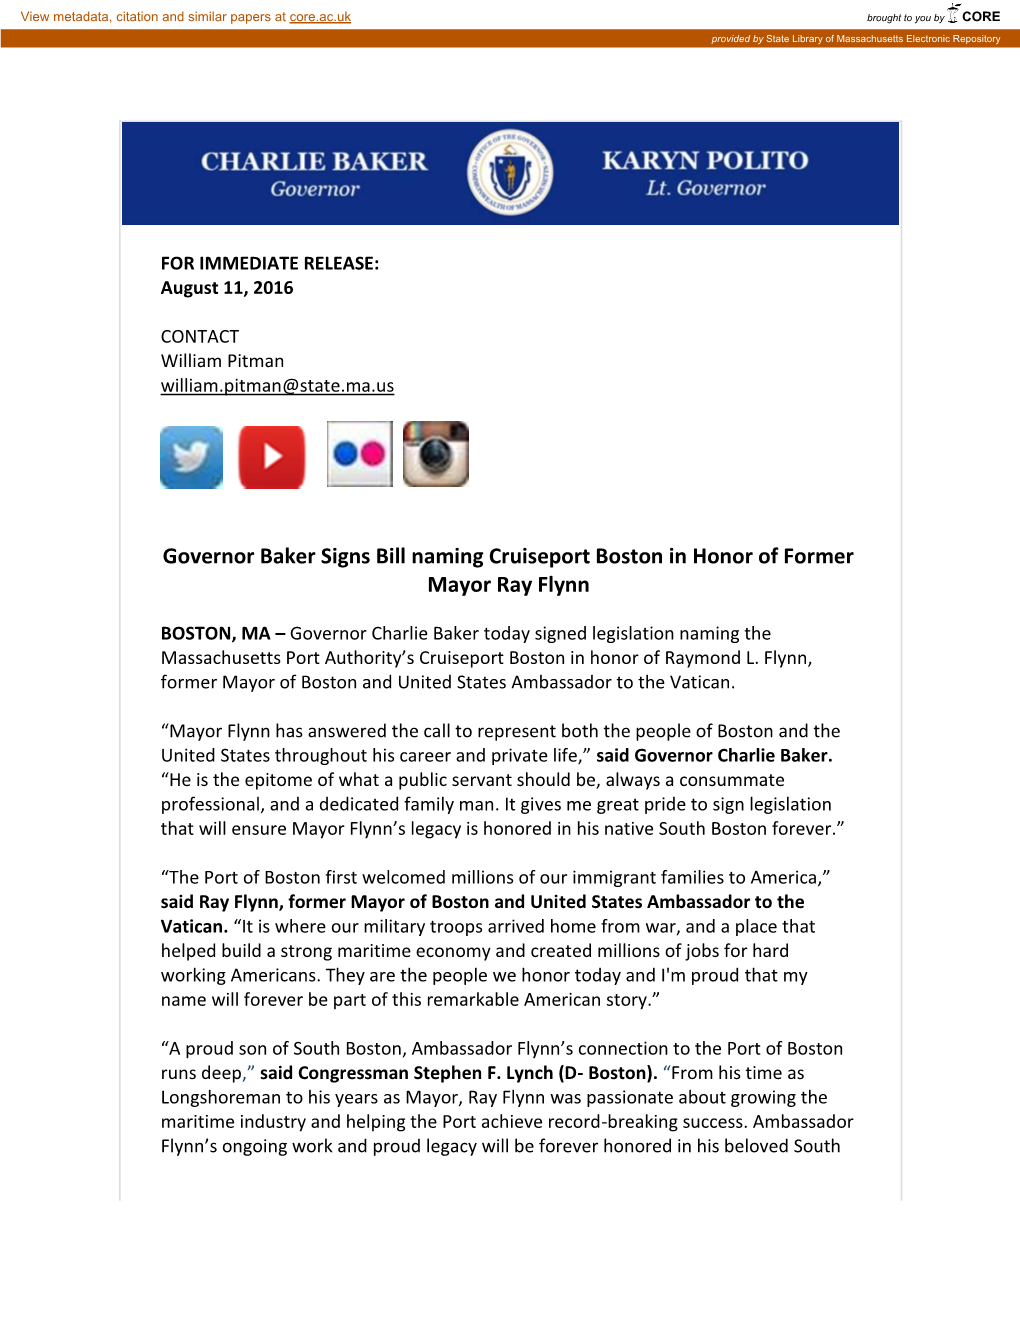 Governor Baker Signs Bill Naming Cruiseport Boston in Honor of Former Mayor Ray Flynn